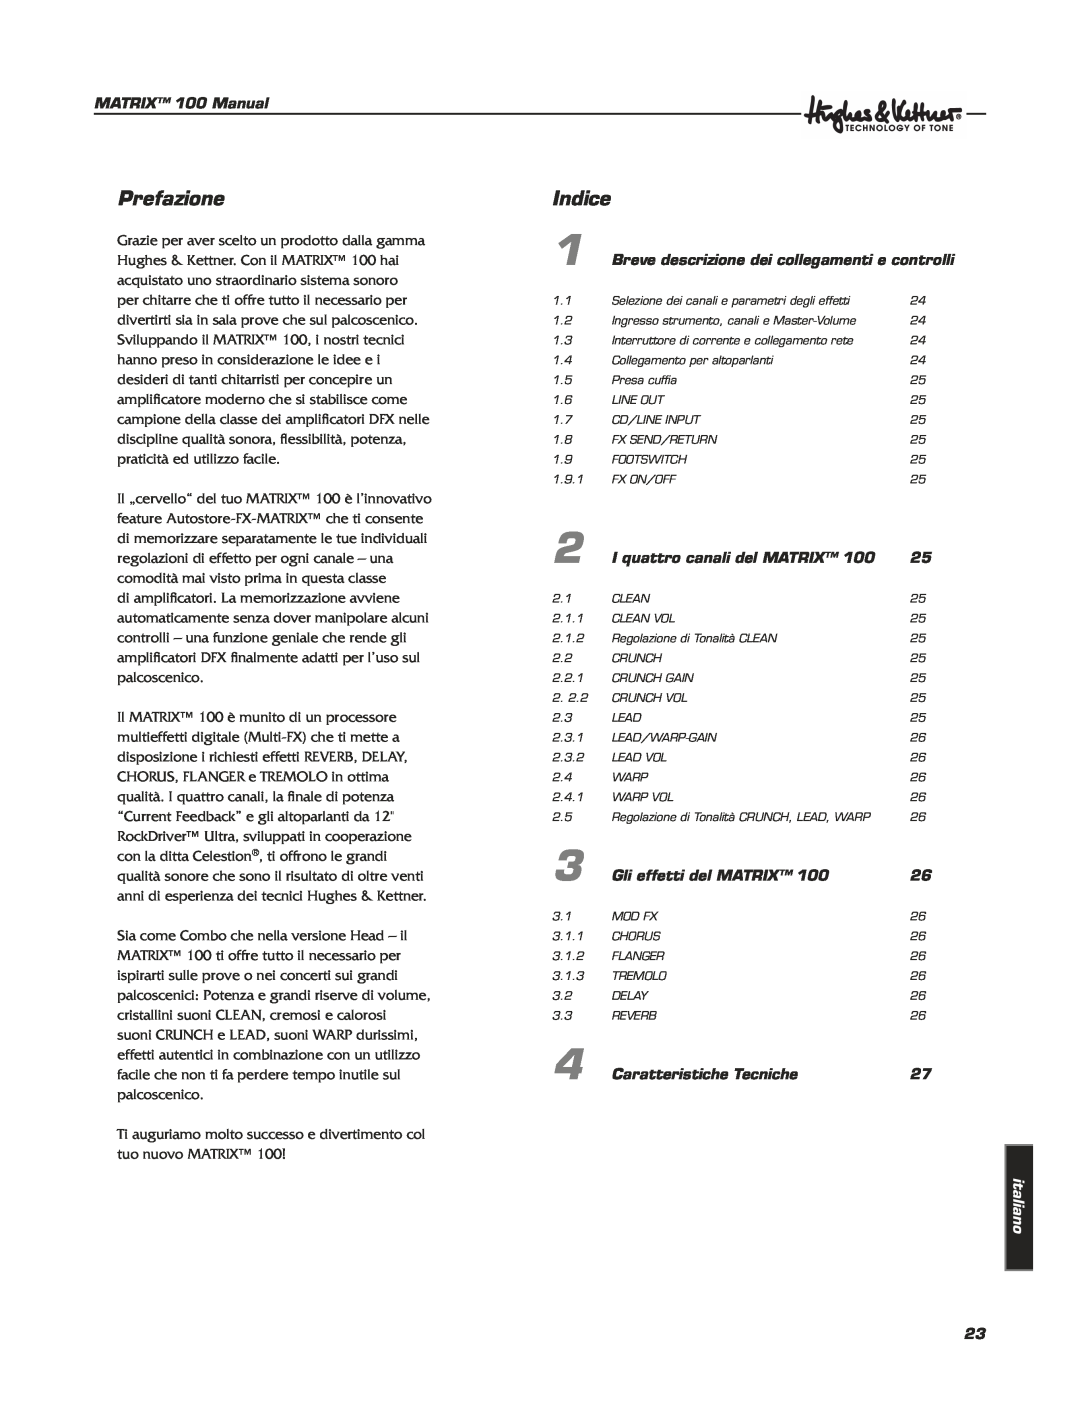 Hughes & Kettner Matrix 100 manual Prefazione, Indice, MATRIX 100 Manual, Breve descrizione dei collegamenti e controlli 